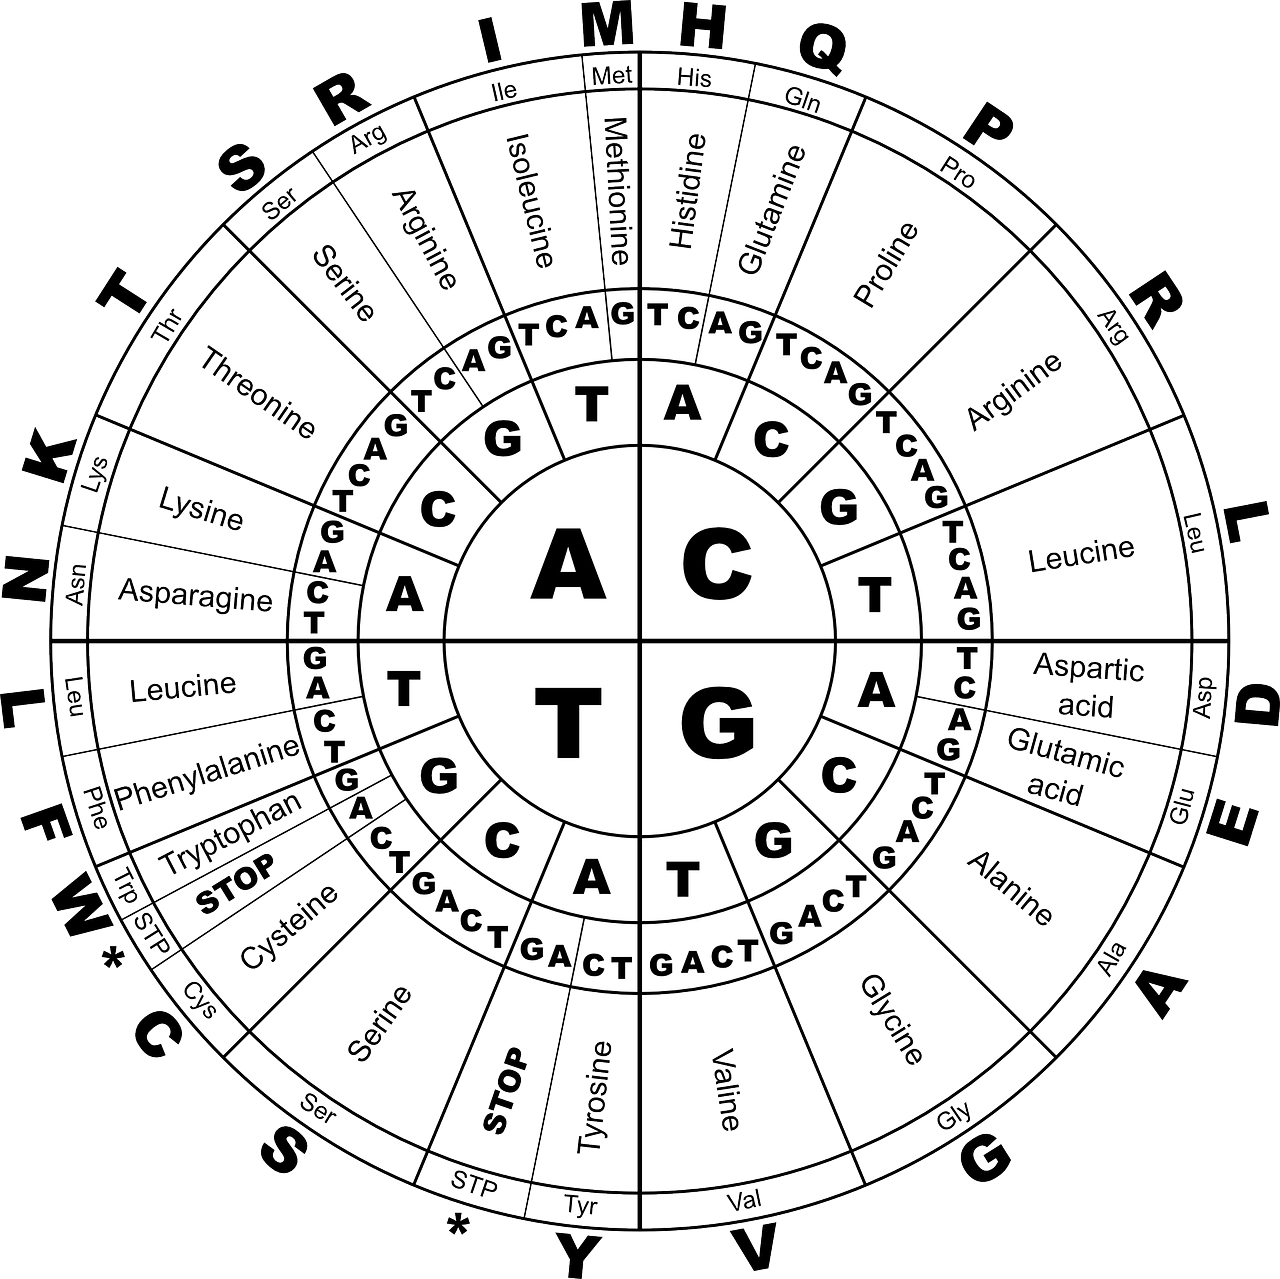 Amino acids graphic